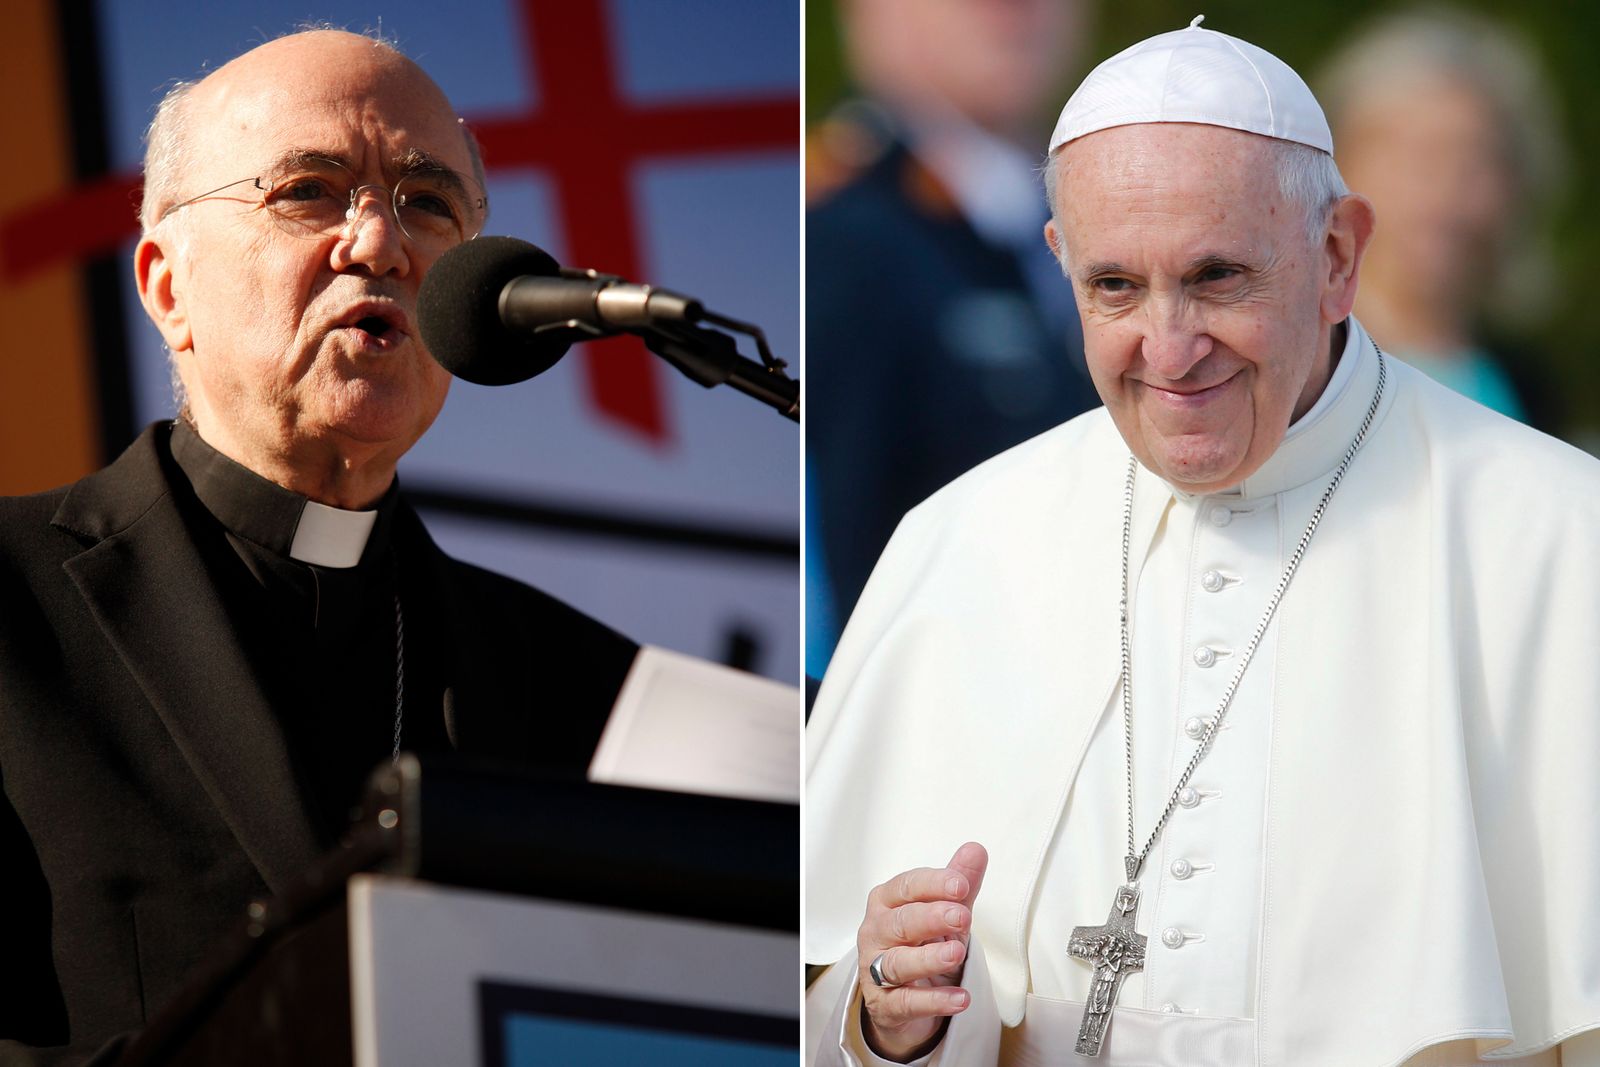 Arzobispo pide la renuncia del papa Francisco por encubrir abuso de menores